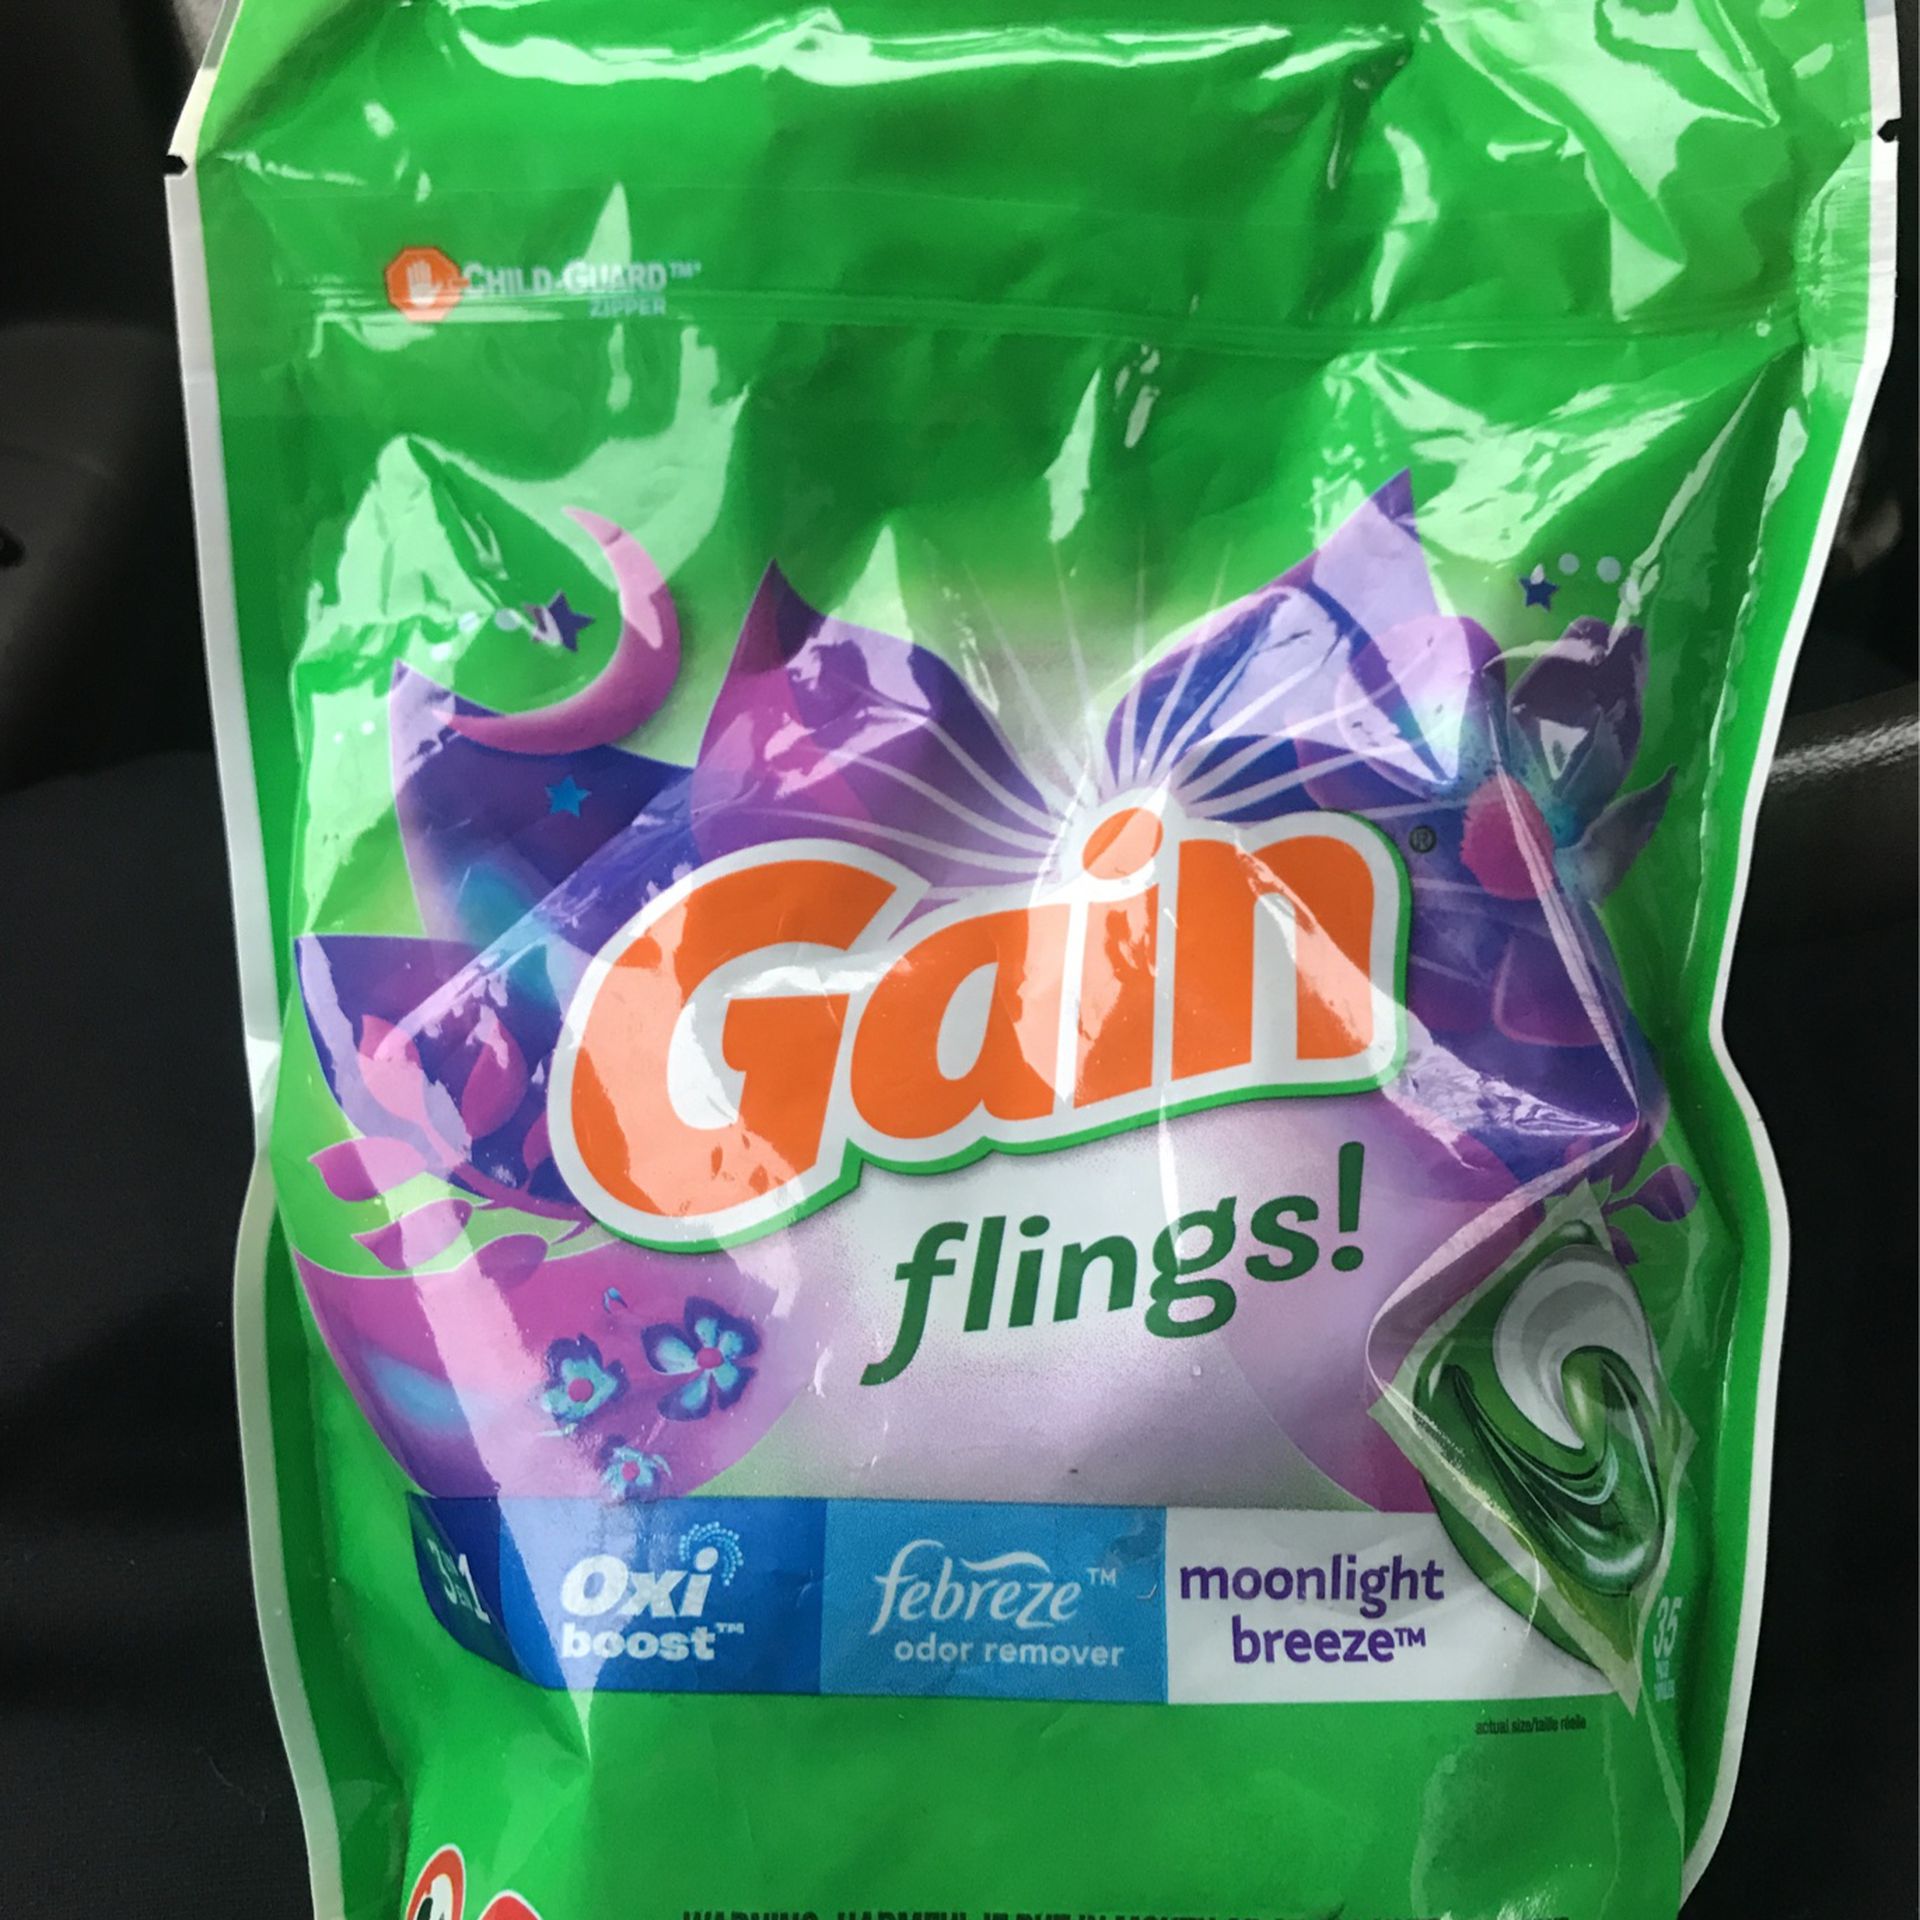 Gain 3 In En 1 Oxi Boost Flings! Laundry Detergent .